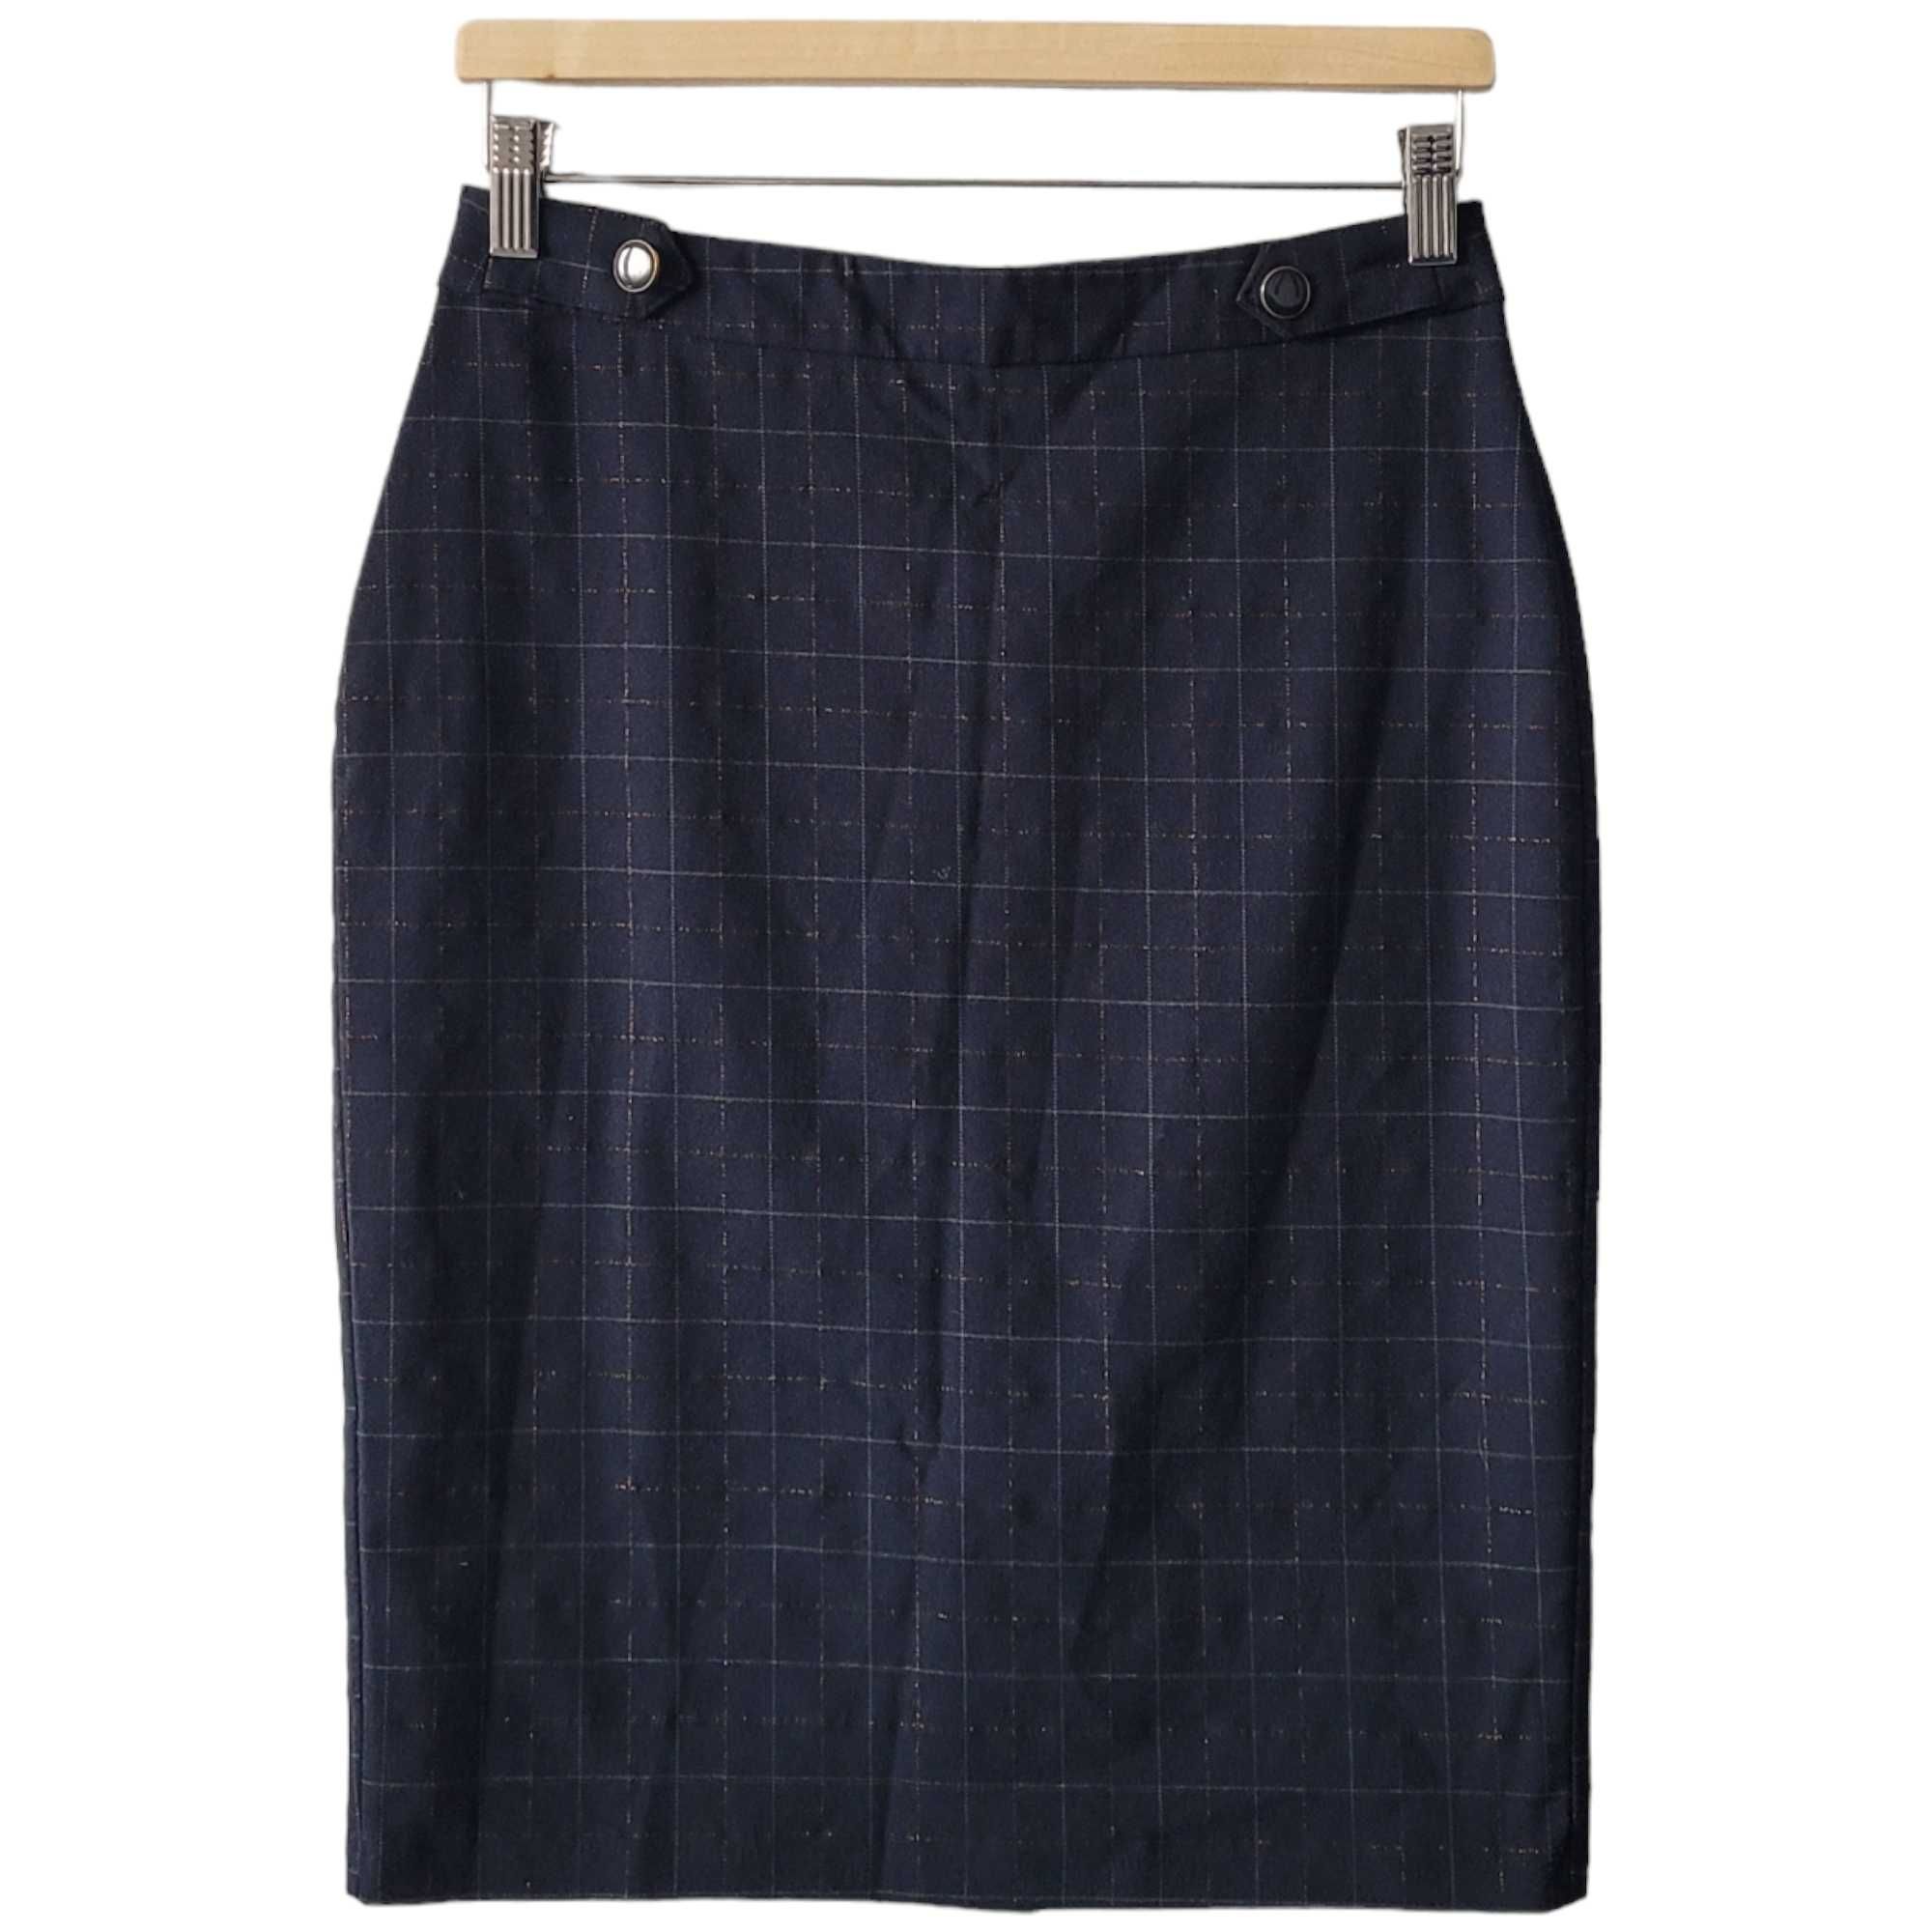 Granatowa elegancka spódnica ołówkowa w kratkę S Quiosque galowa